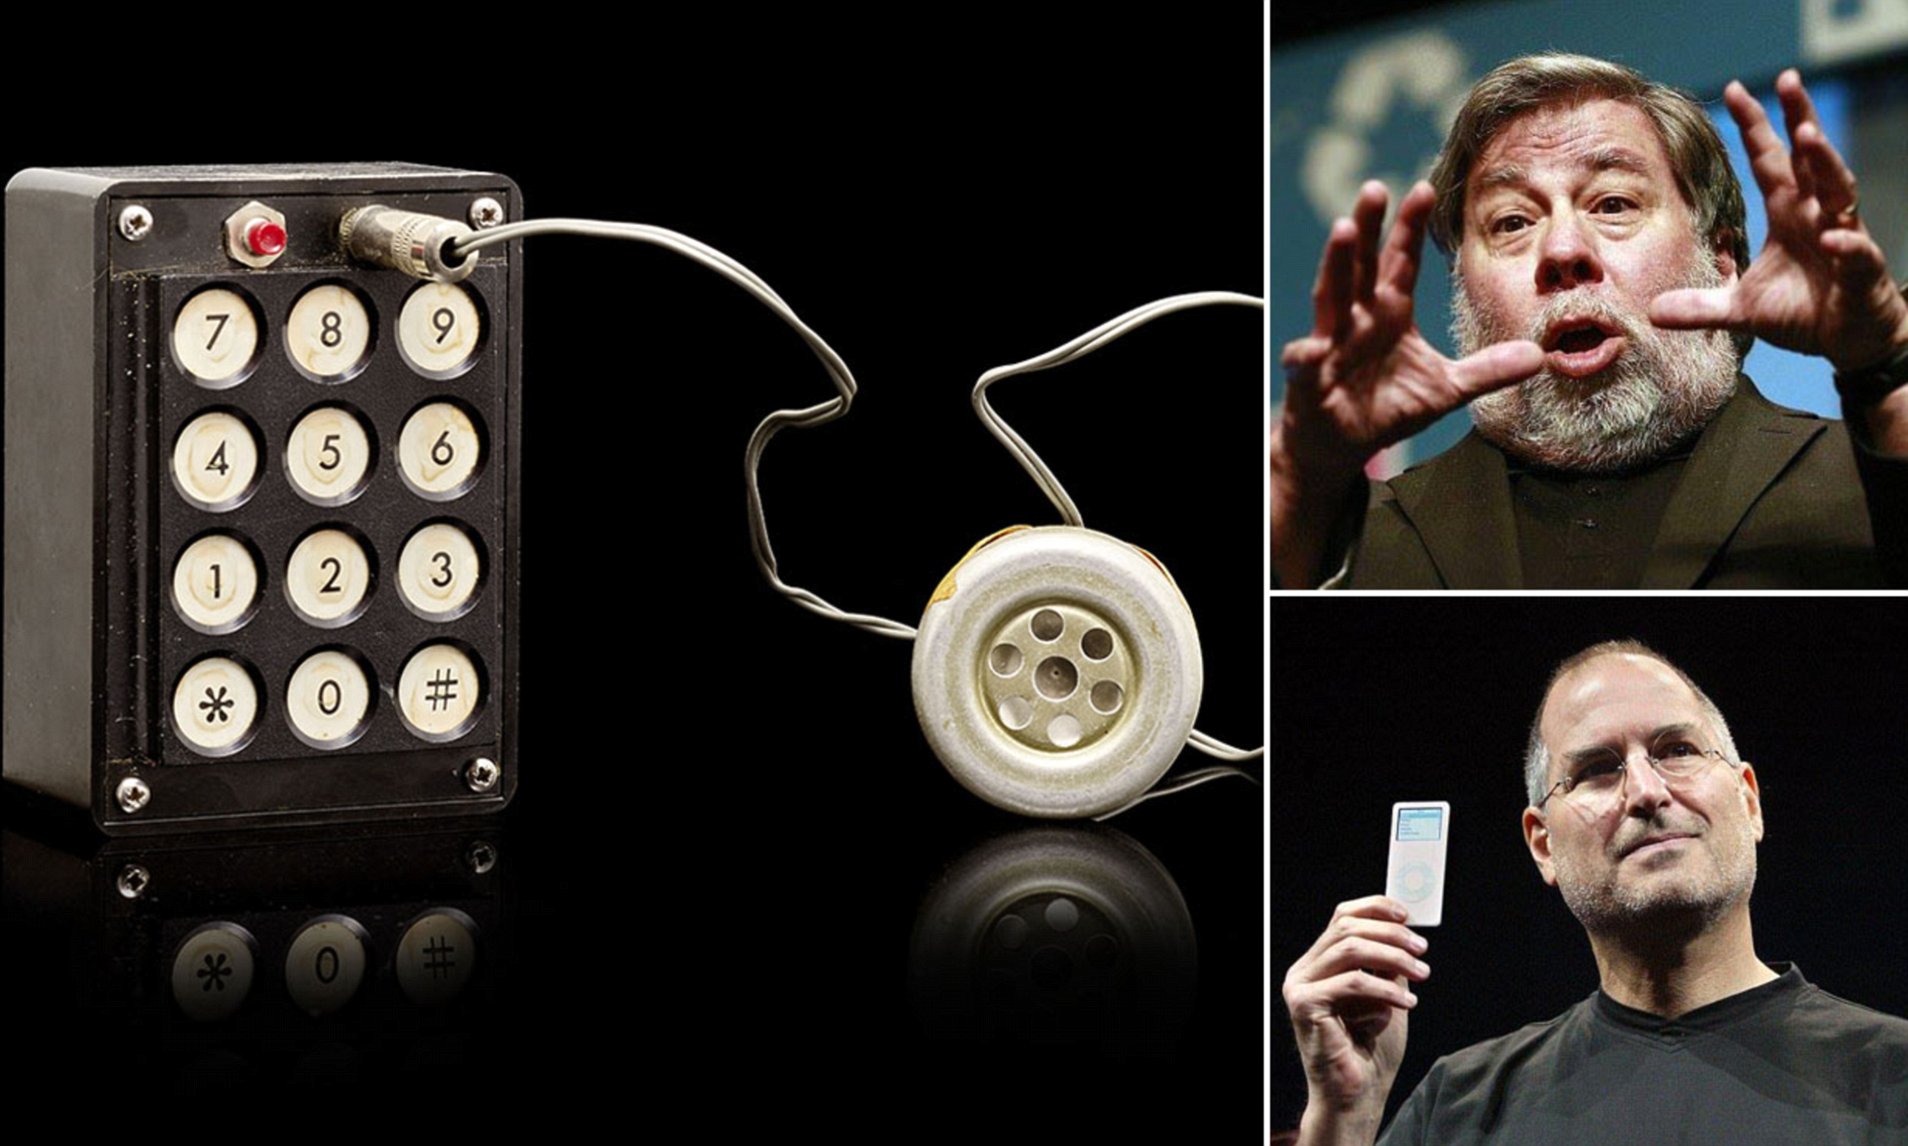 از iPhoneIslam.com، استیو جابز و مردی که یک کنترل از راه دور در دست دارد، نوآوری خود را در دسامبر نیوز به نمایش گذاشتند.